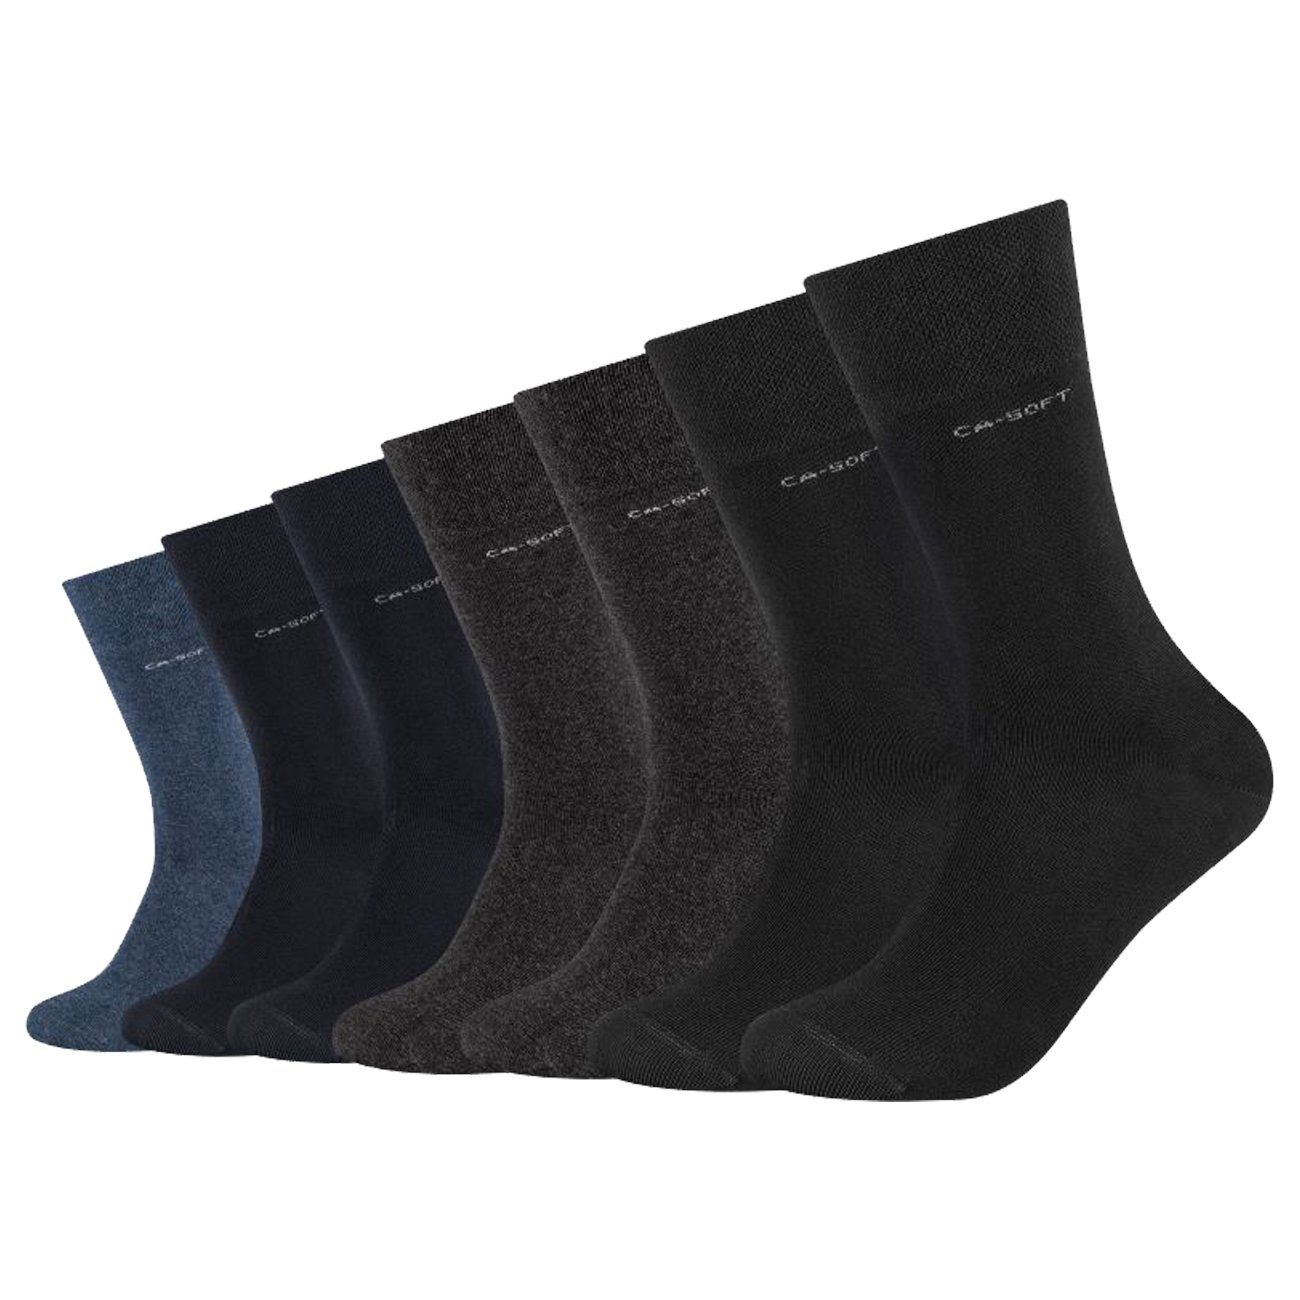 Camano Langsocken Unisex Regular Socken CA-Soft (7-Paar) Gesundheitssocken ohne Gummi Anthracite Mix (9803)